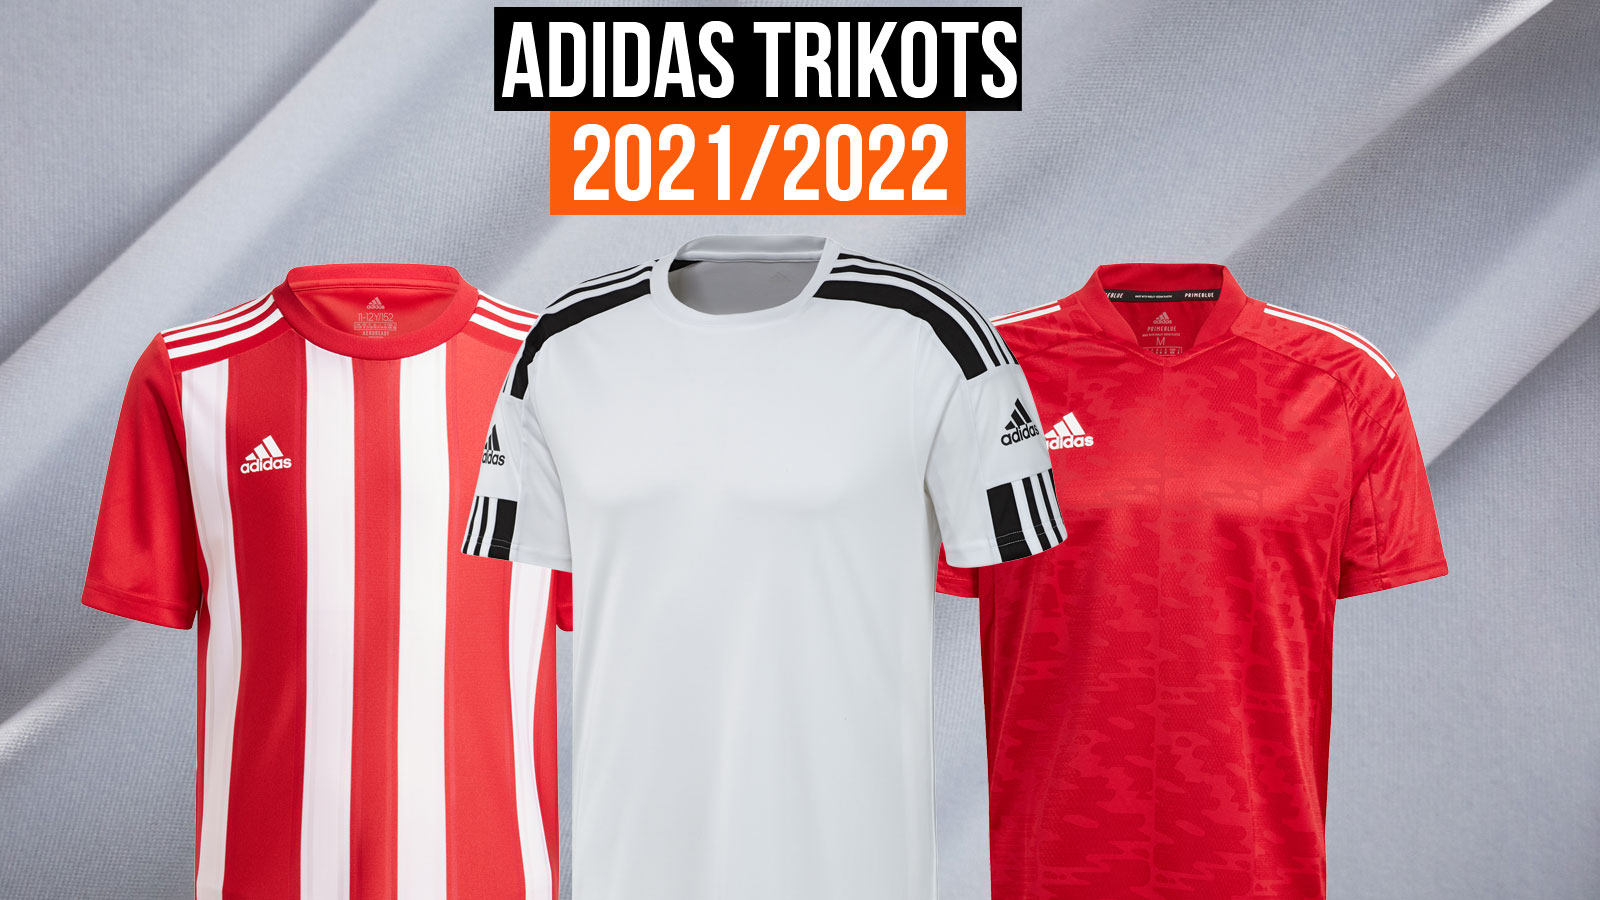 alle neuen adidas Trikots für 2021/2022 in der Übersicht und mit Shop Link